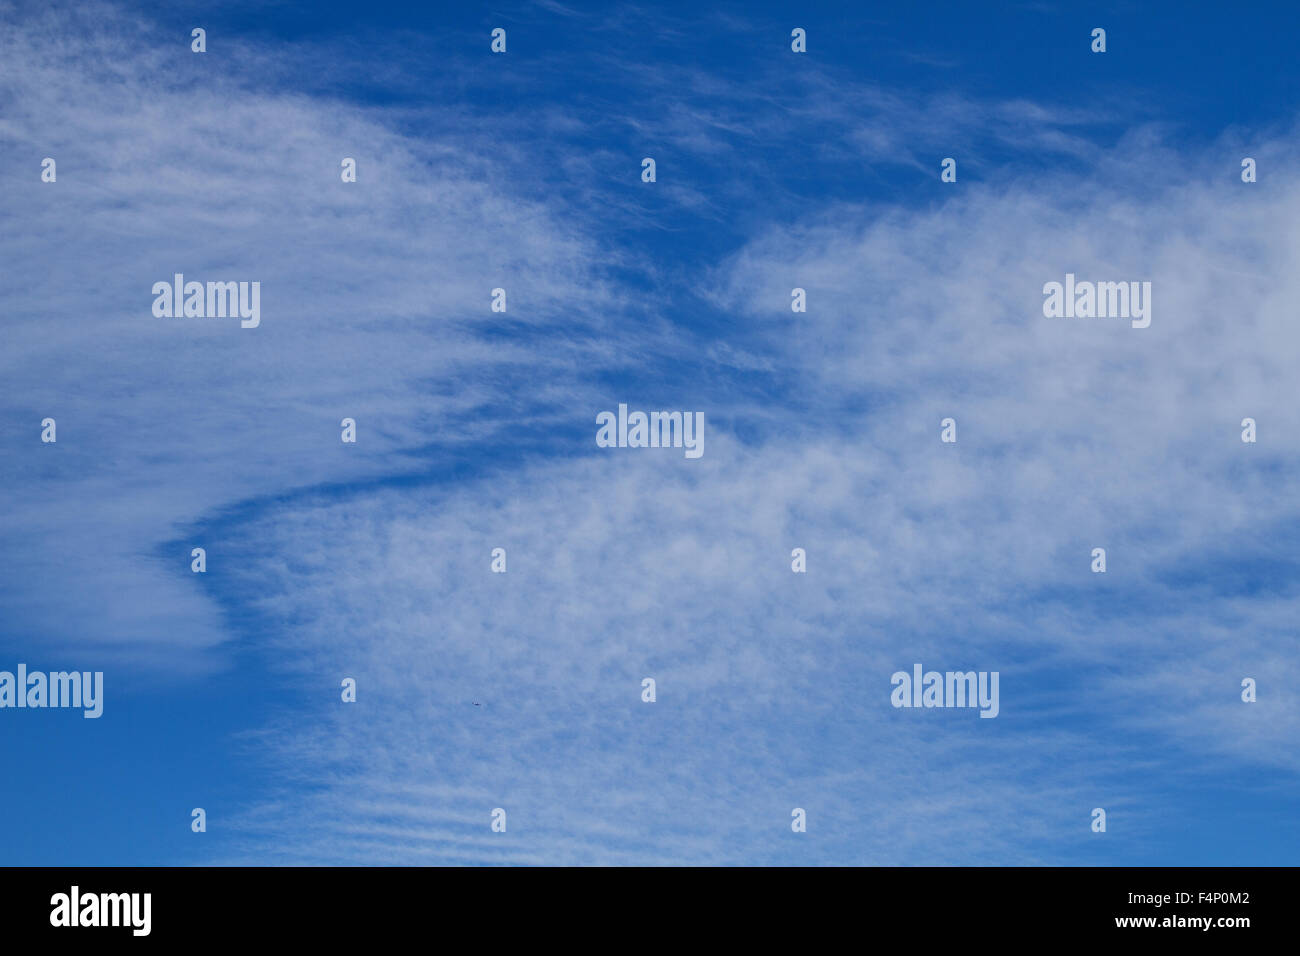 De Tayside, Dundee, Escocia, Reino Unido, 21 de octubre de 2015. El clima del Reino Unido: la cálida y soleada tarde de otoño en Dundee con temperaturas mínimas de 16°C. Otoño glorioso escenas de baja altitud 'Espina de Pez' o 'Mackerel' nubes formando patrones inusuales en el cielo de la ciudad de Dundee. © Dundee Fotografías / Alamy Live News. Foto de stock